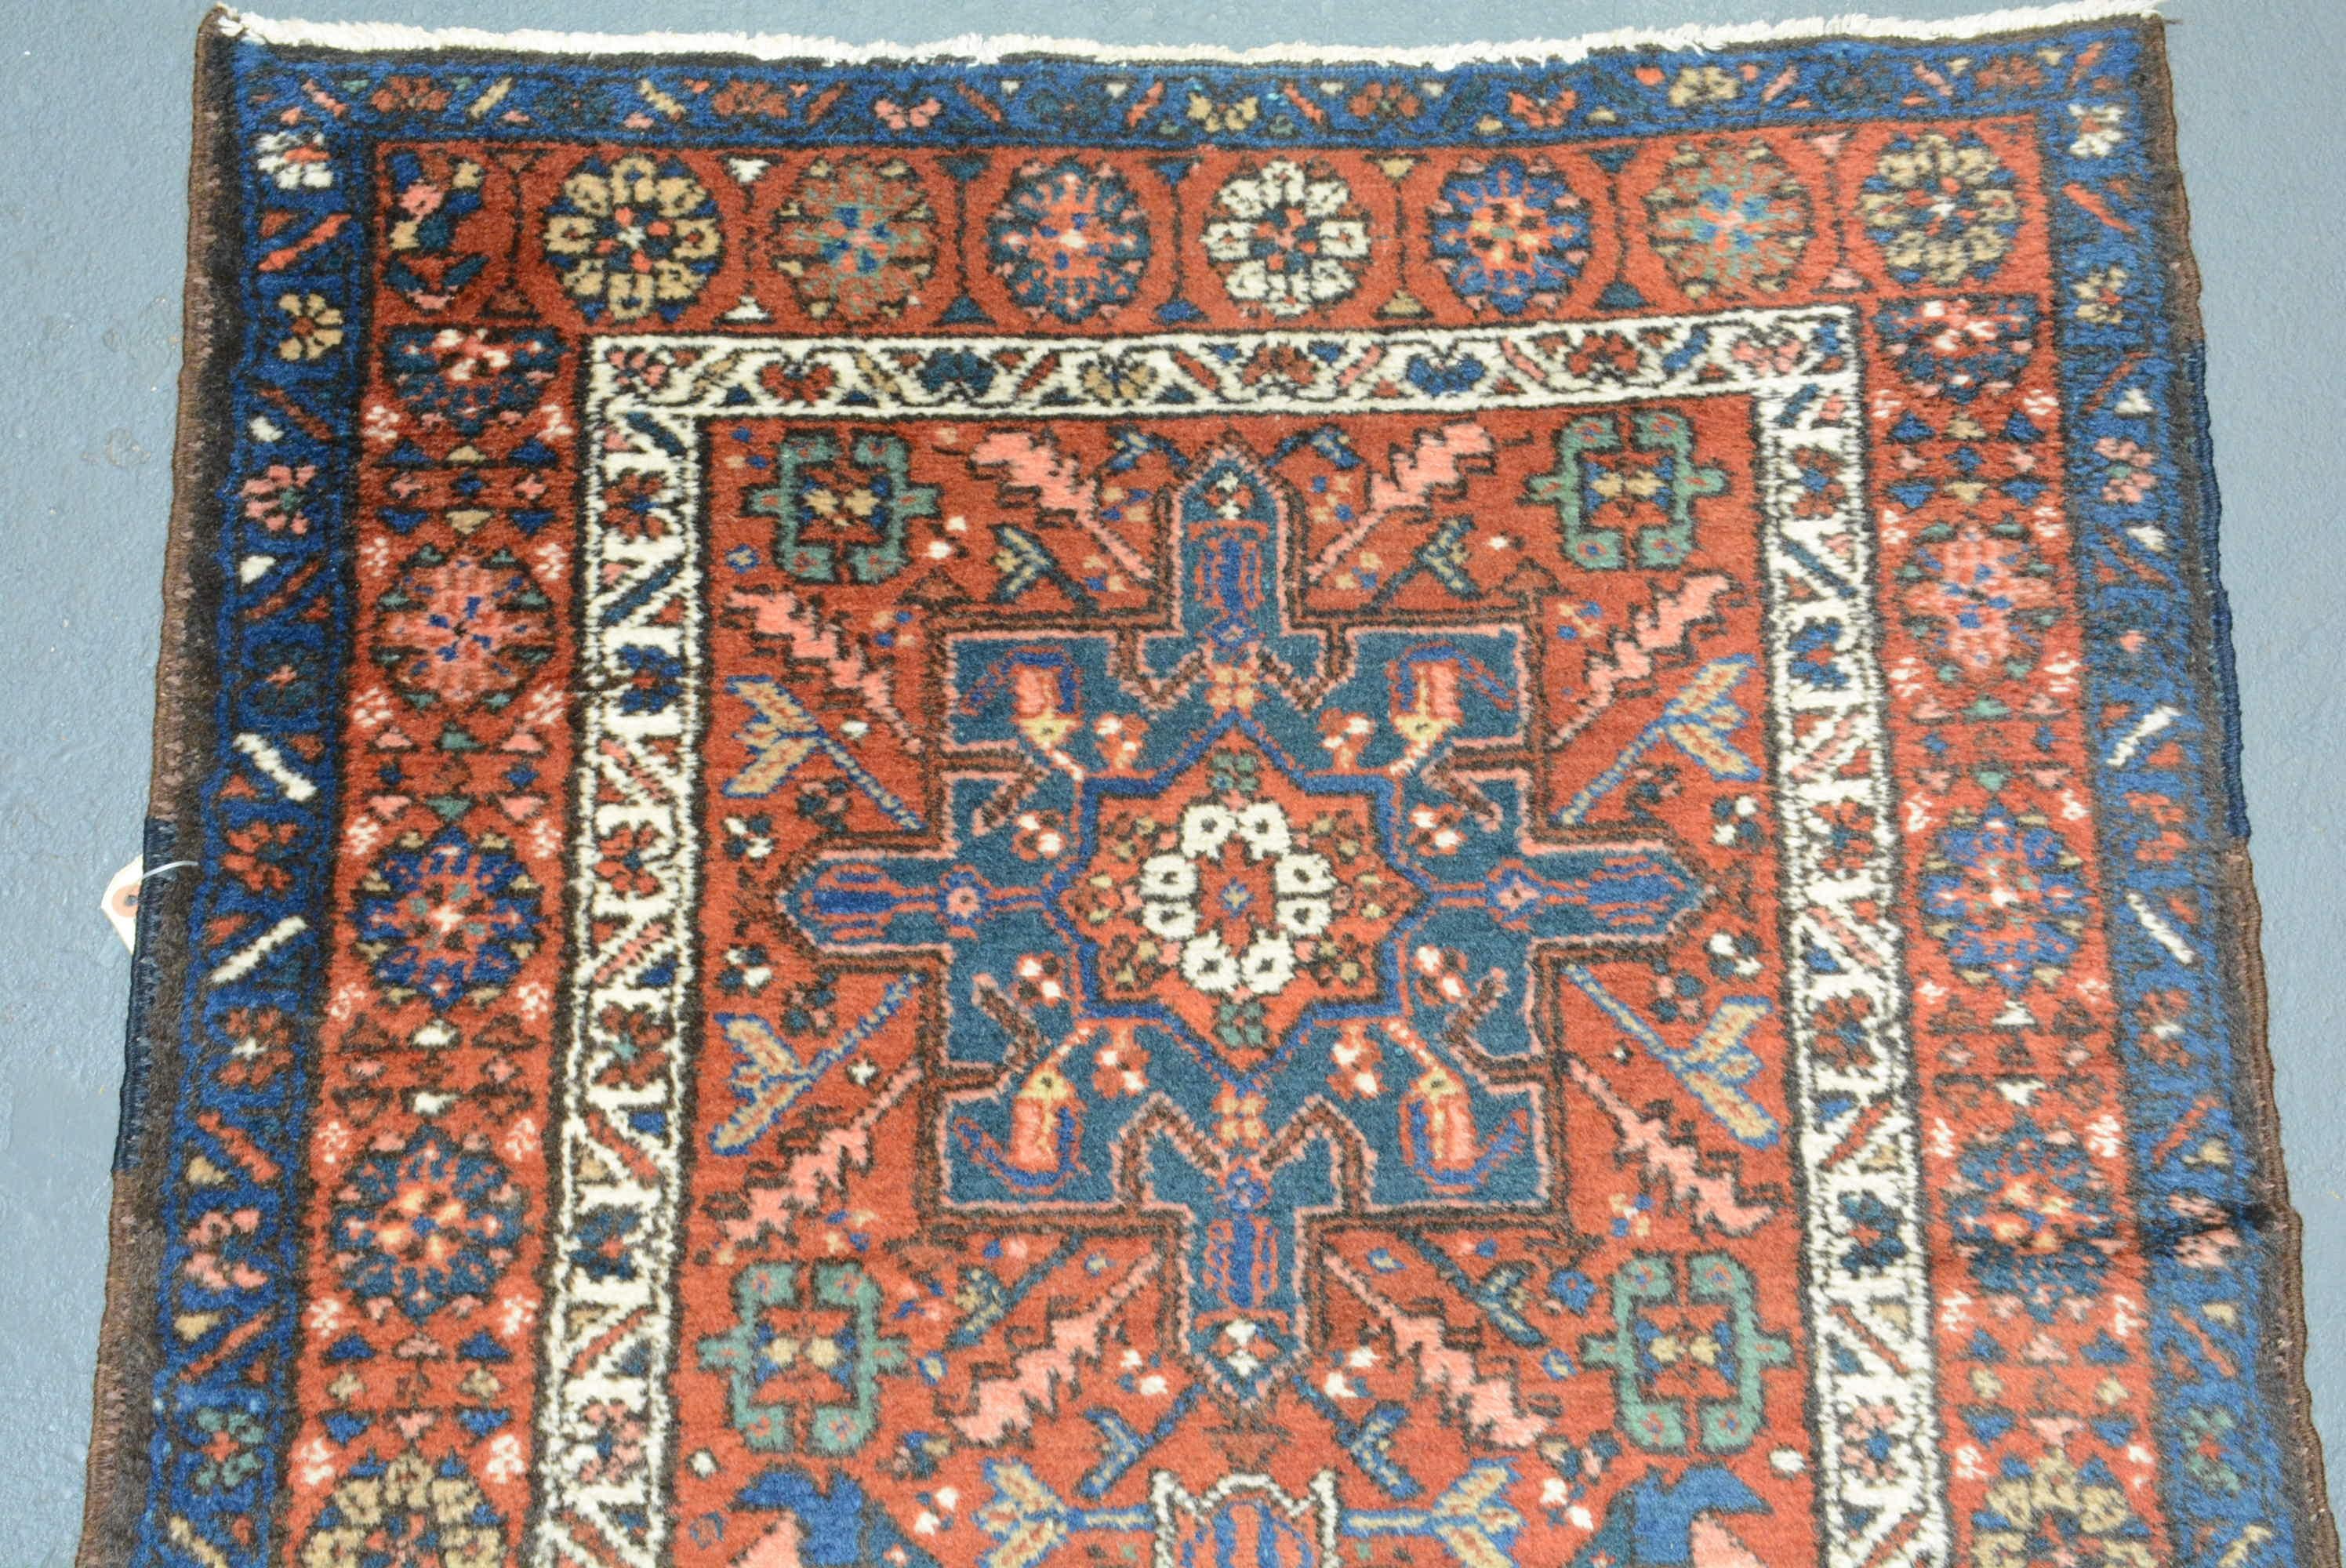 Les tapis et les patins persans Karadja sont tissés dans le nord-ouest du pays, dans un petit village. Ces tapis sont généralement produits en formats de coureurs, mais des tapis de taille pièce sont également tissés ici. Ils sont influencés par les